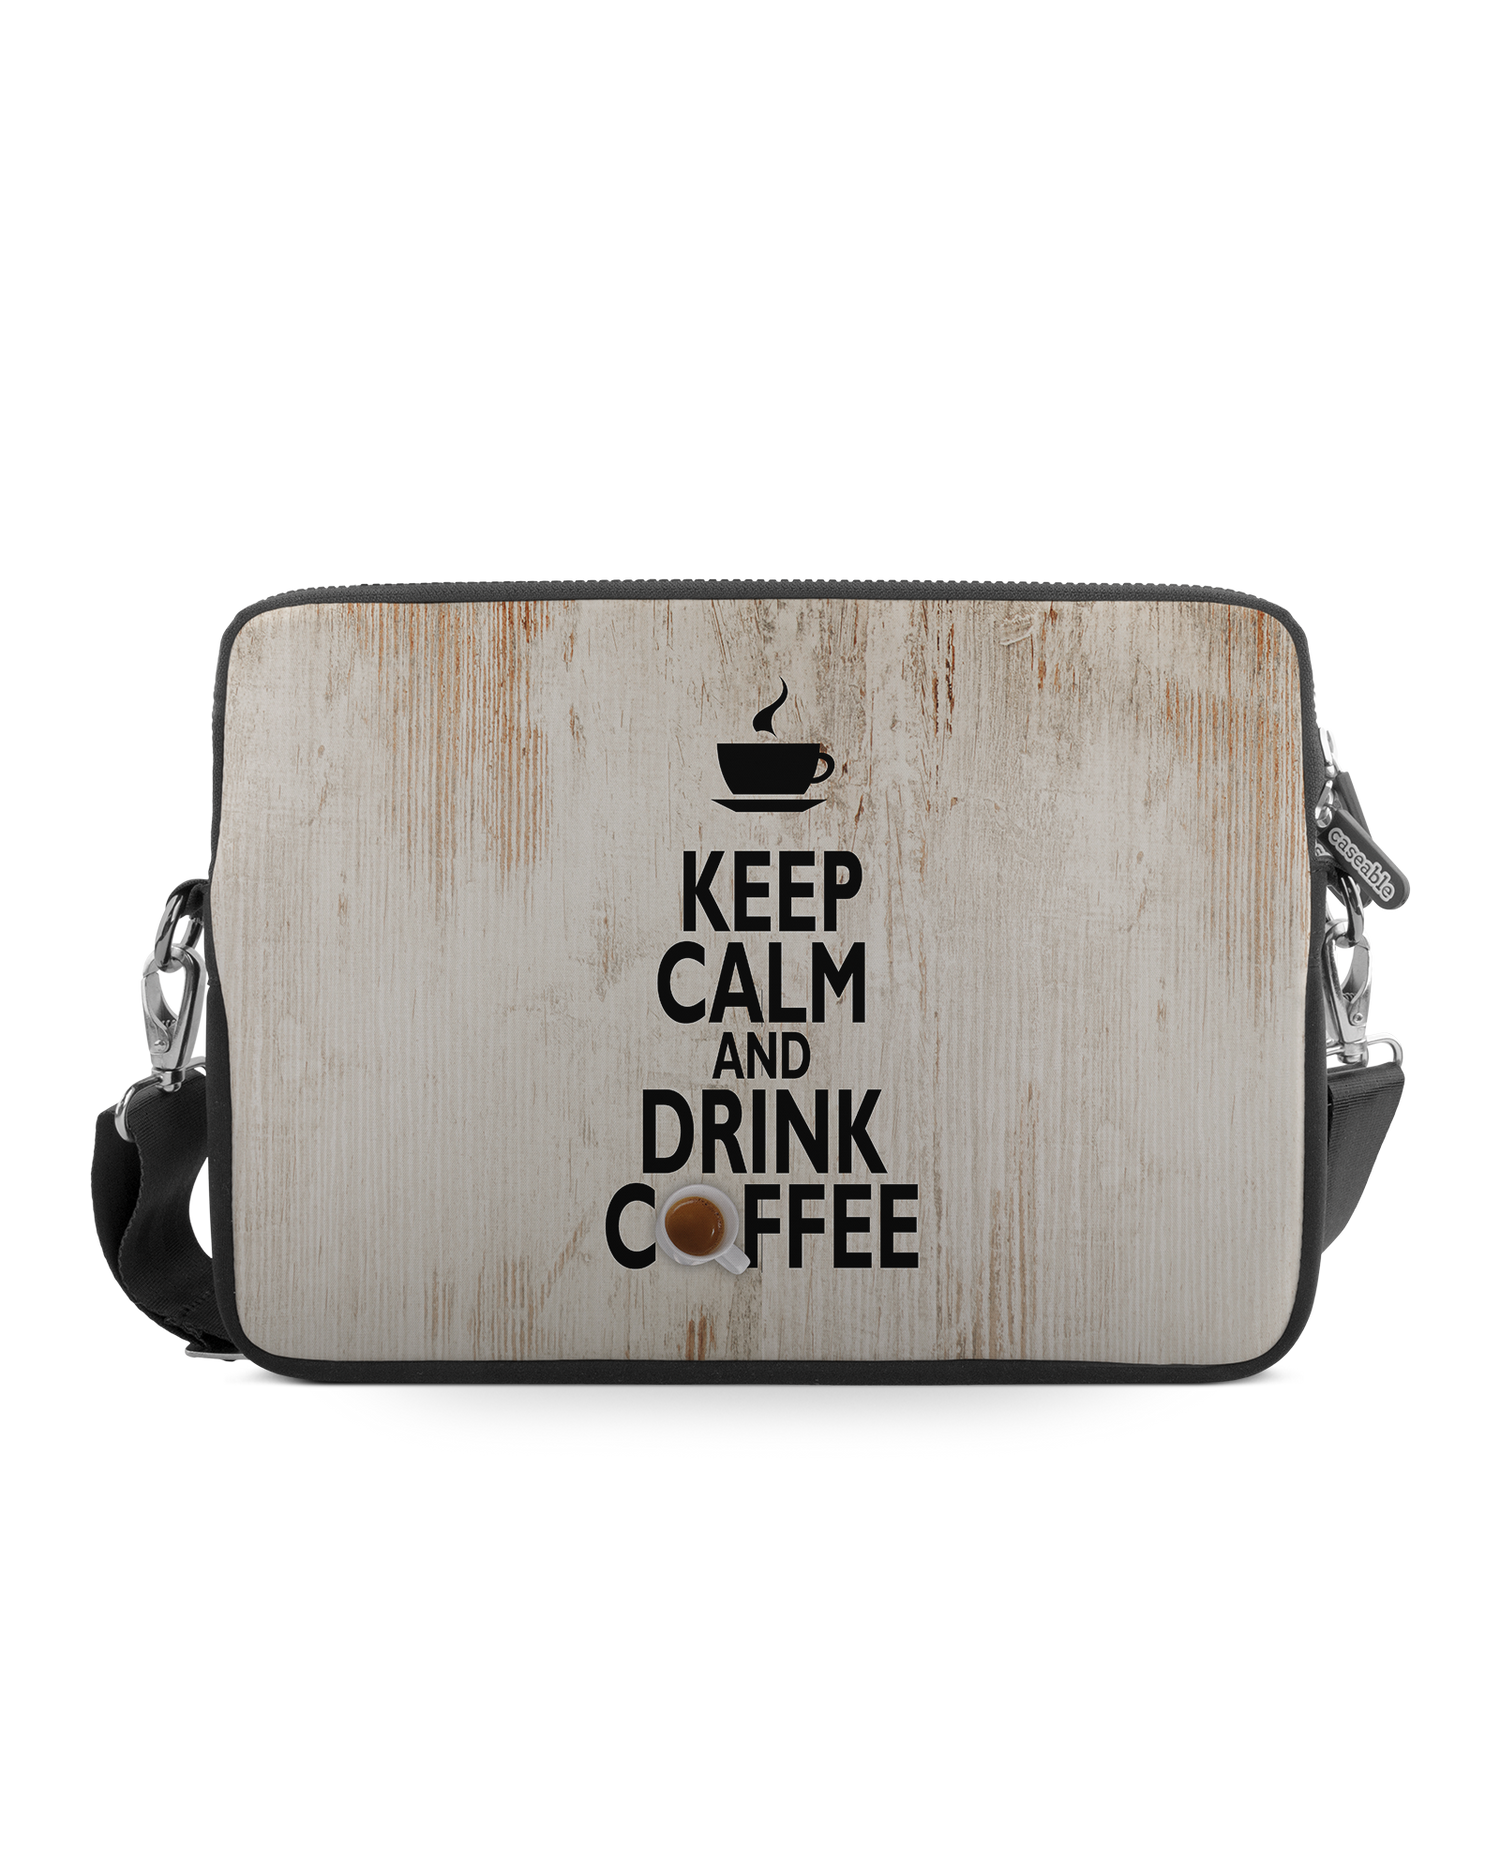 Drink Coffee Premium Laptoptasche 13-14 Zoll: Vorderansicht